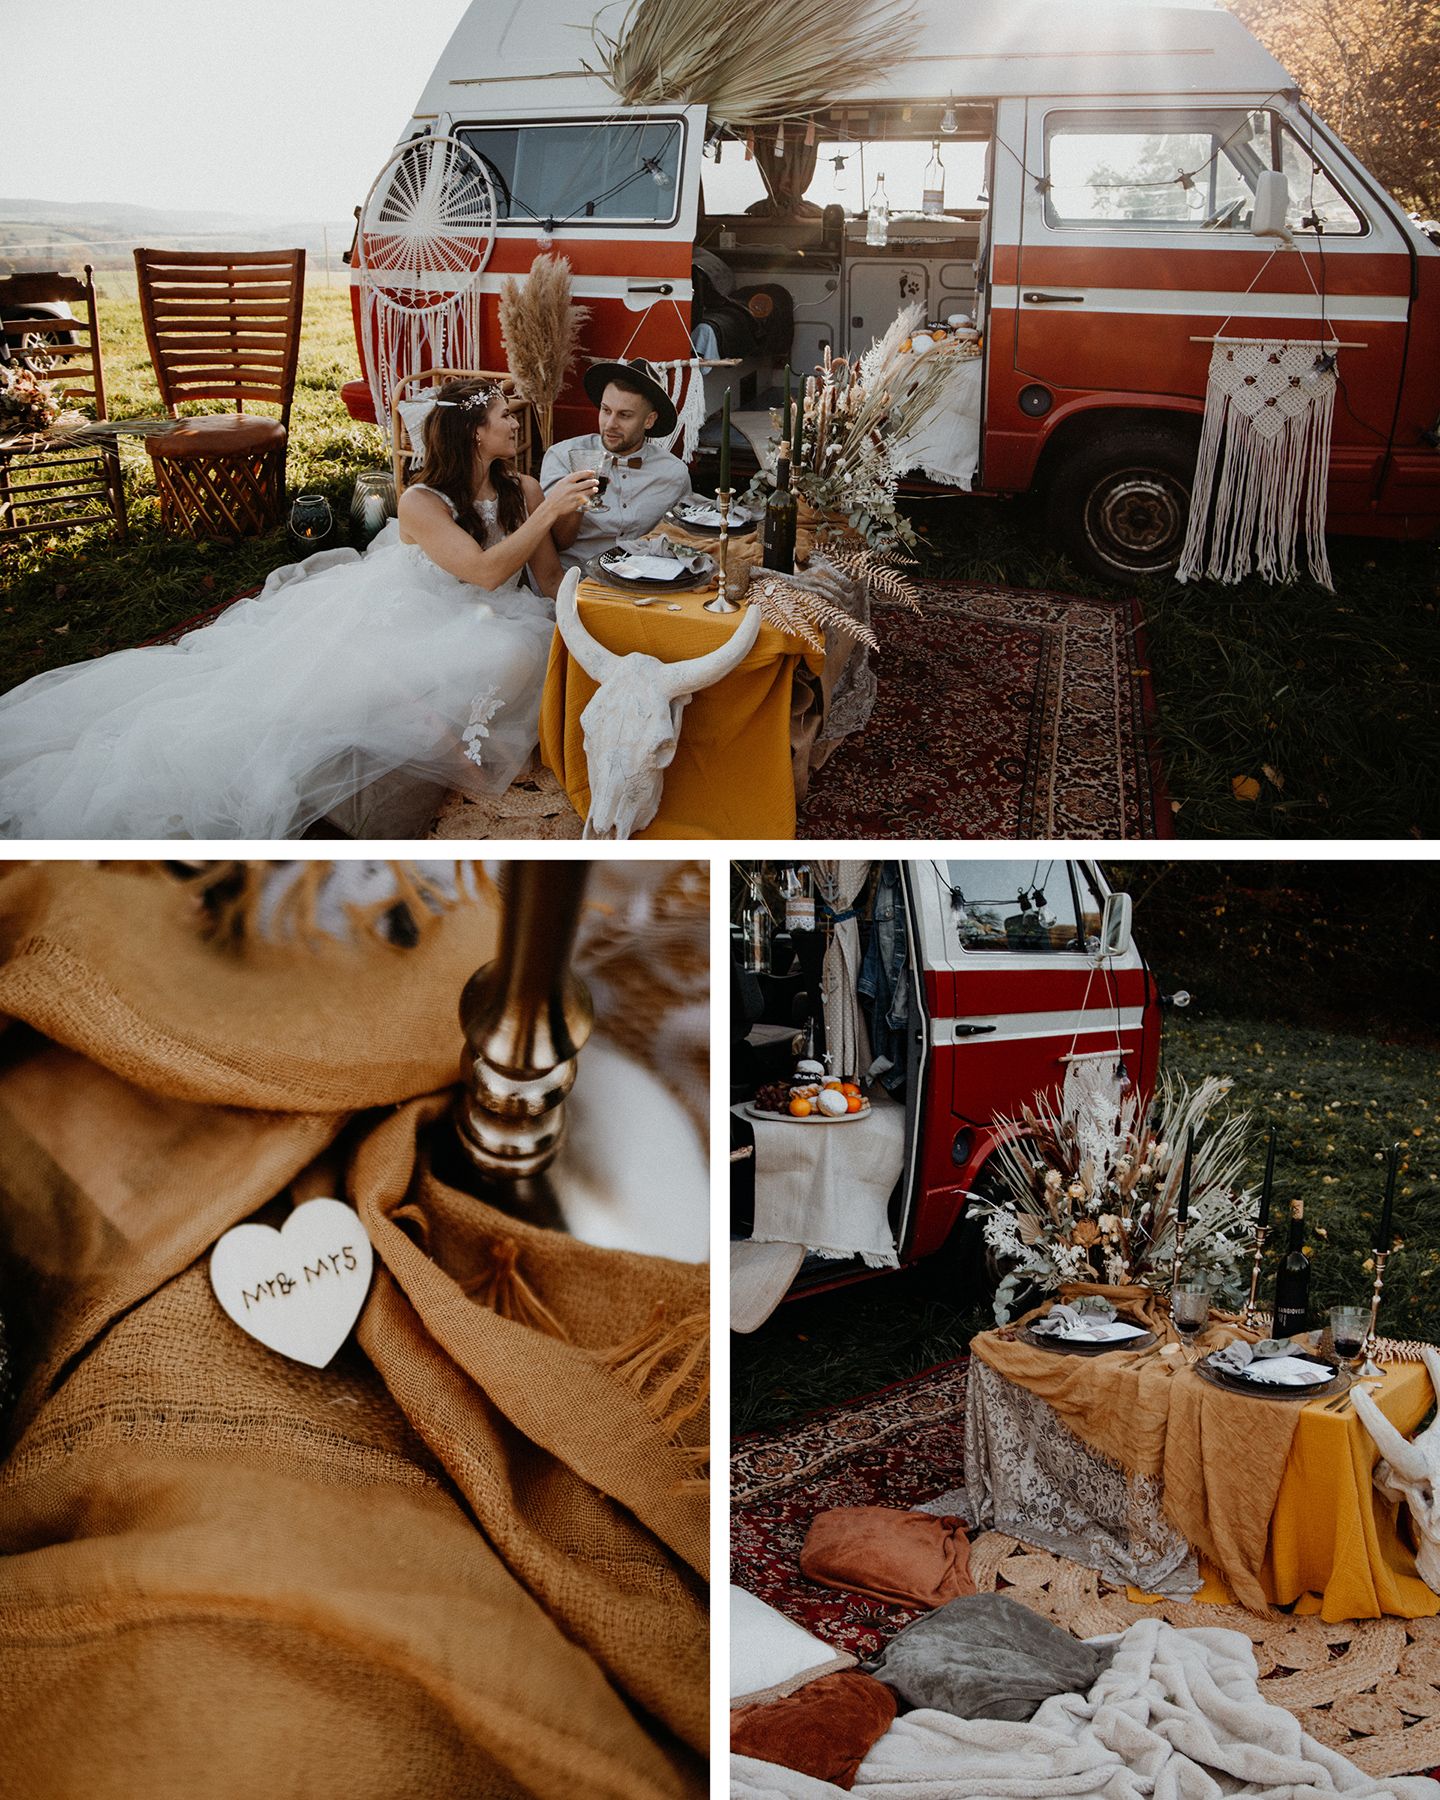 Brautpaar picknickt vor Hochzeitsbulli im Bohostil mit Traumfängern und Makramee-Elementen.